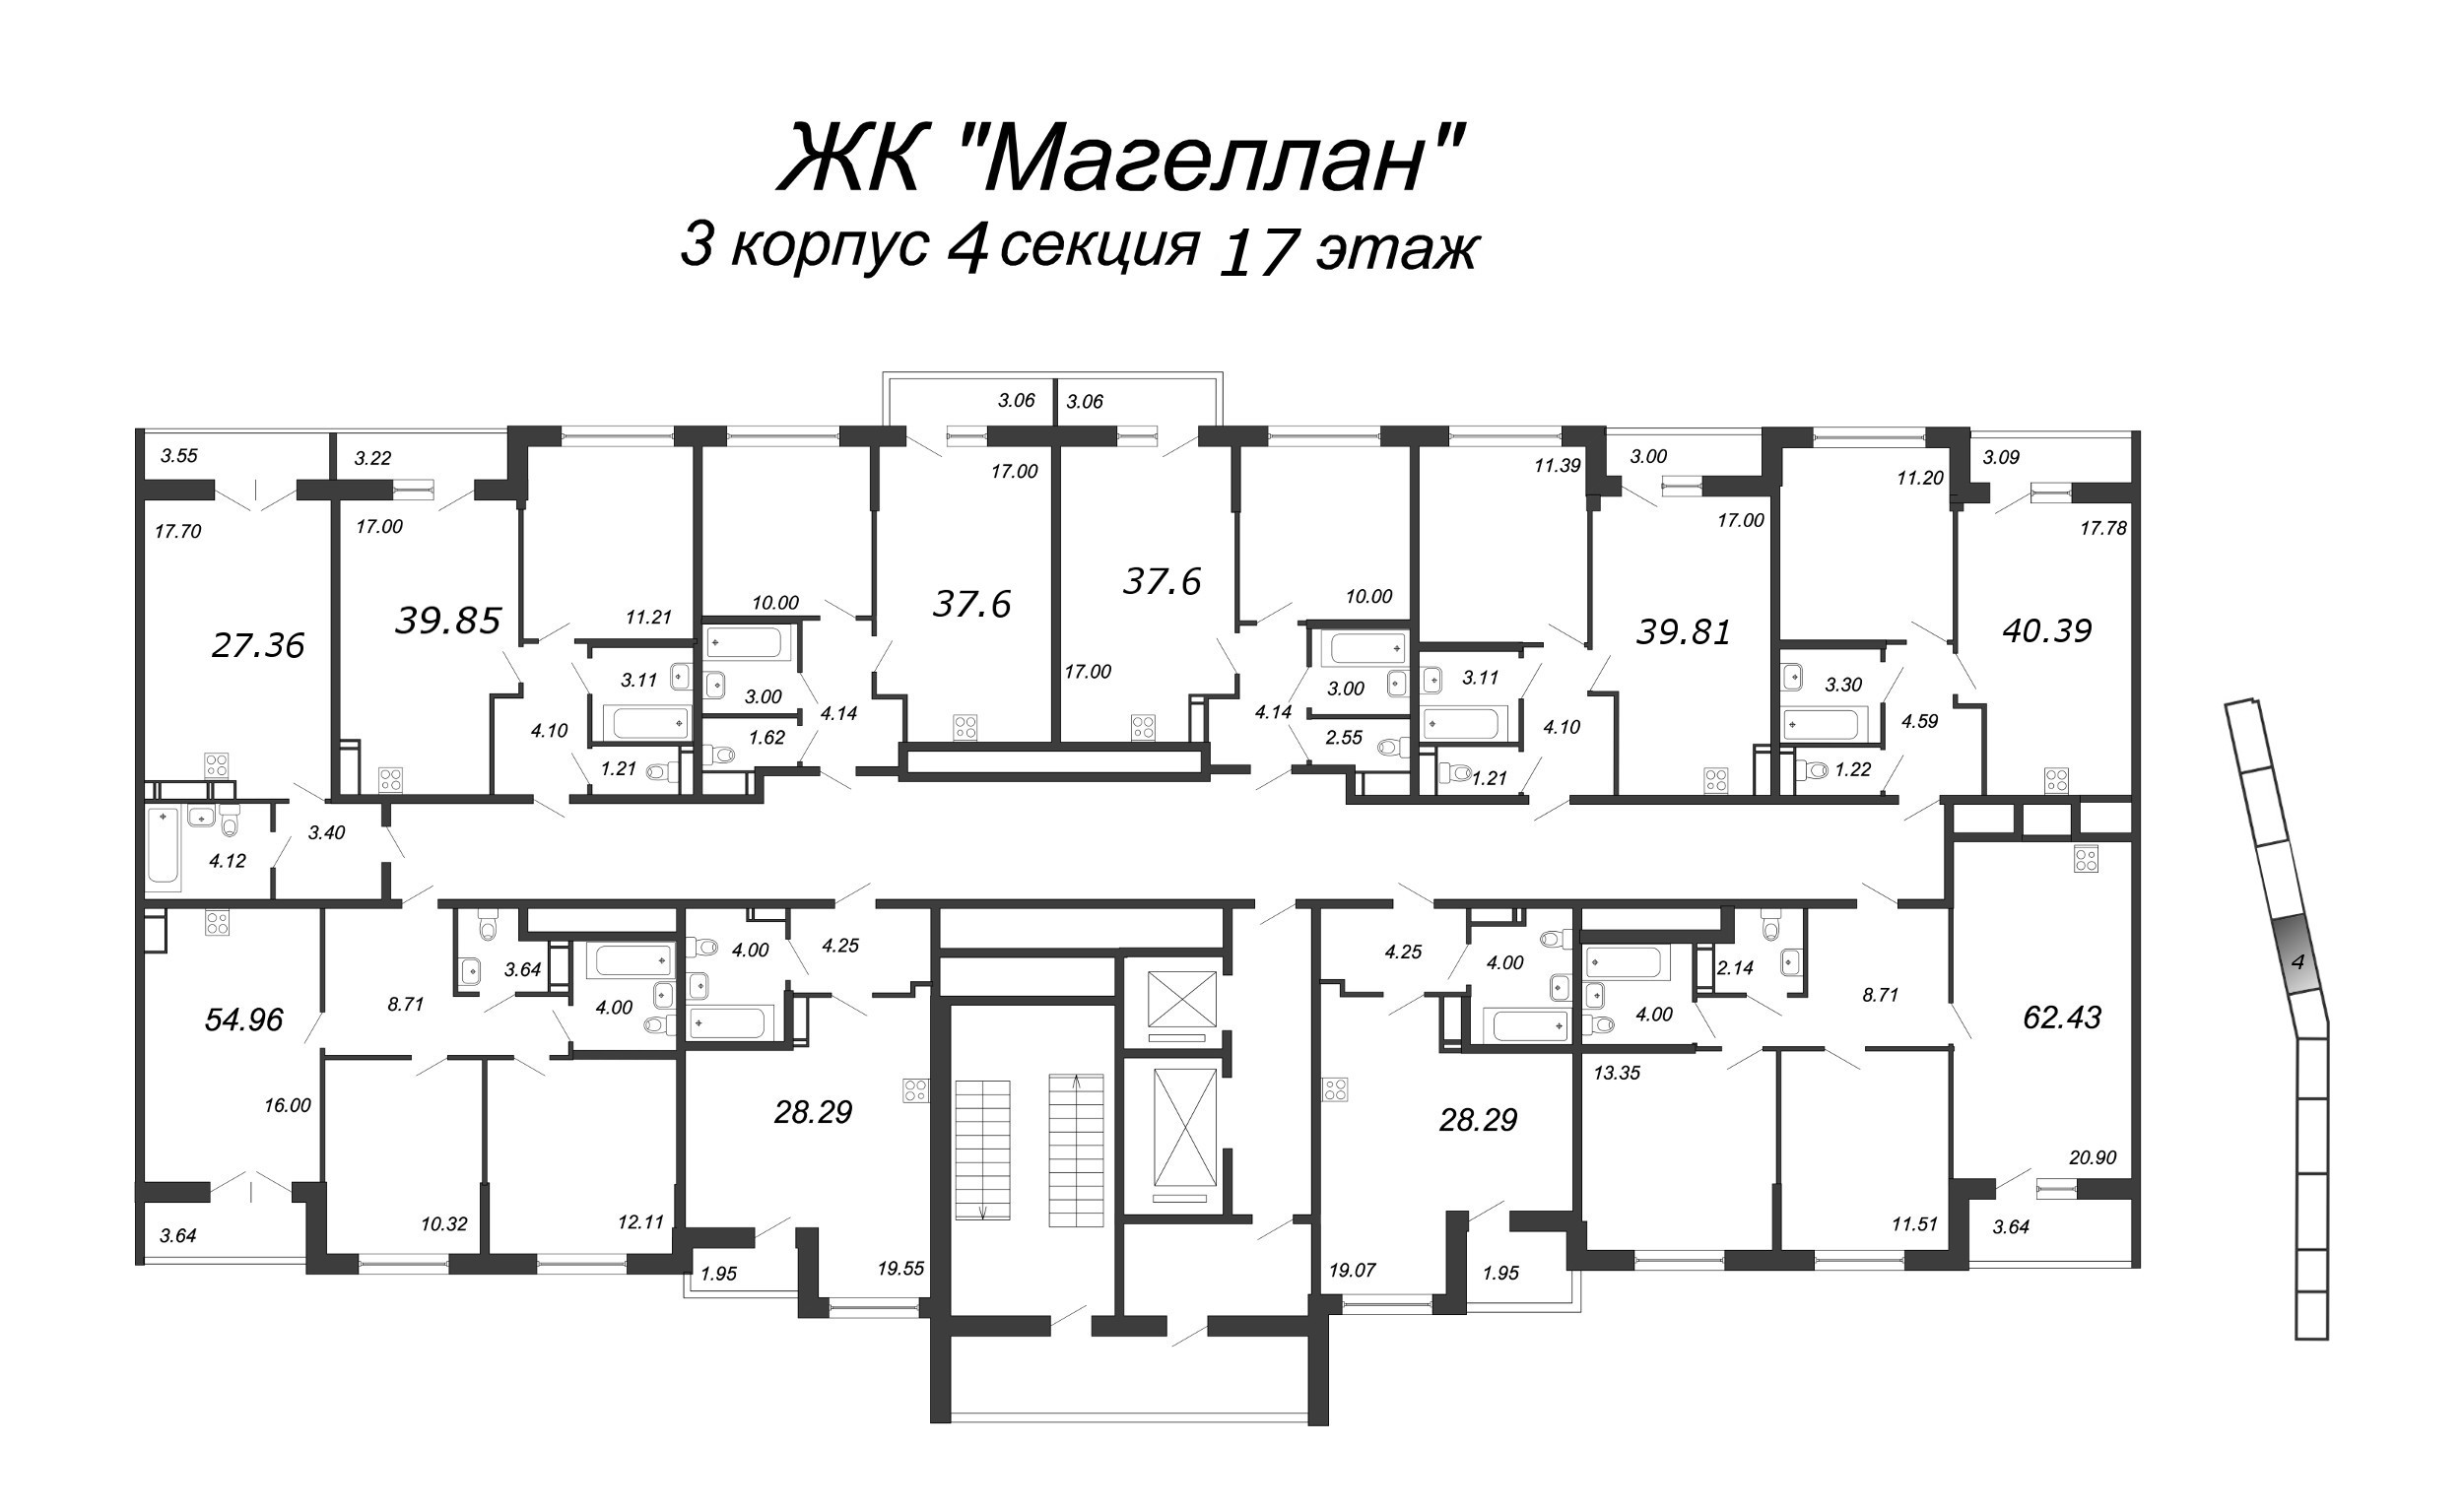 3-комнатная (Евро) квартира, 63 м² в ЖК "Магеллан" - планировка этажа